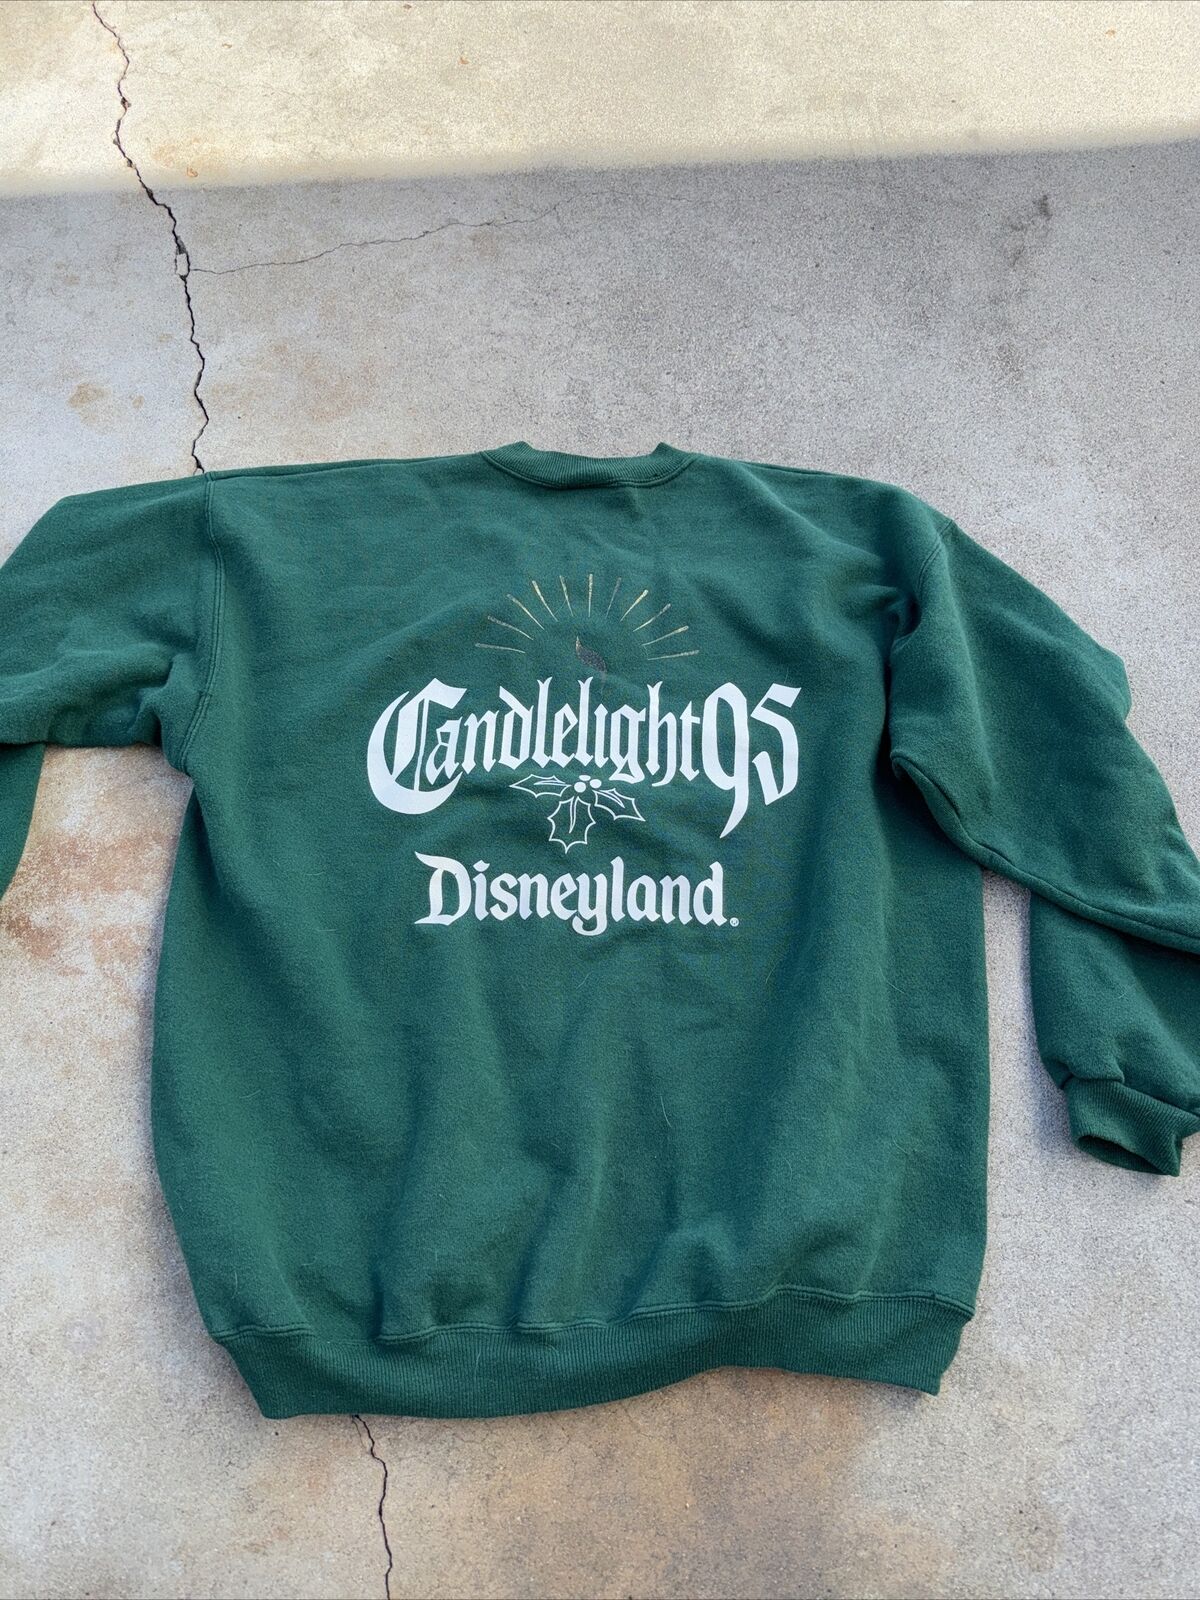 Vintage 1995 Disneyland Candlelight Sweatshirt 